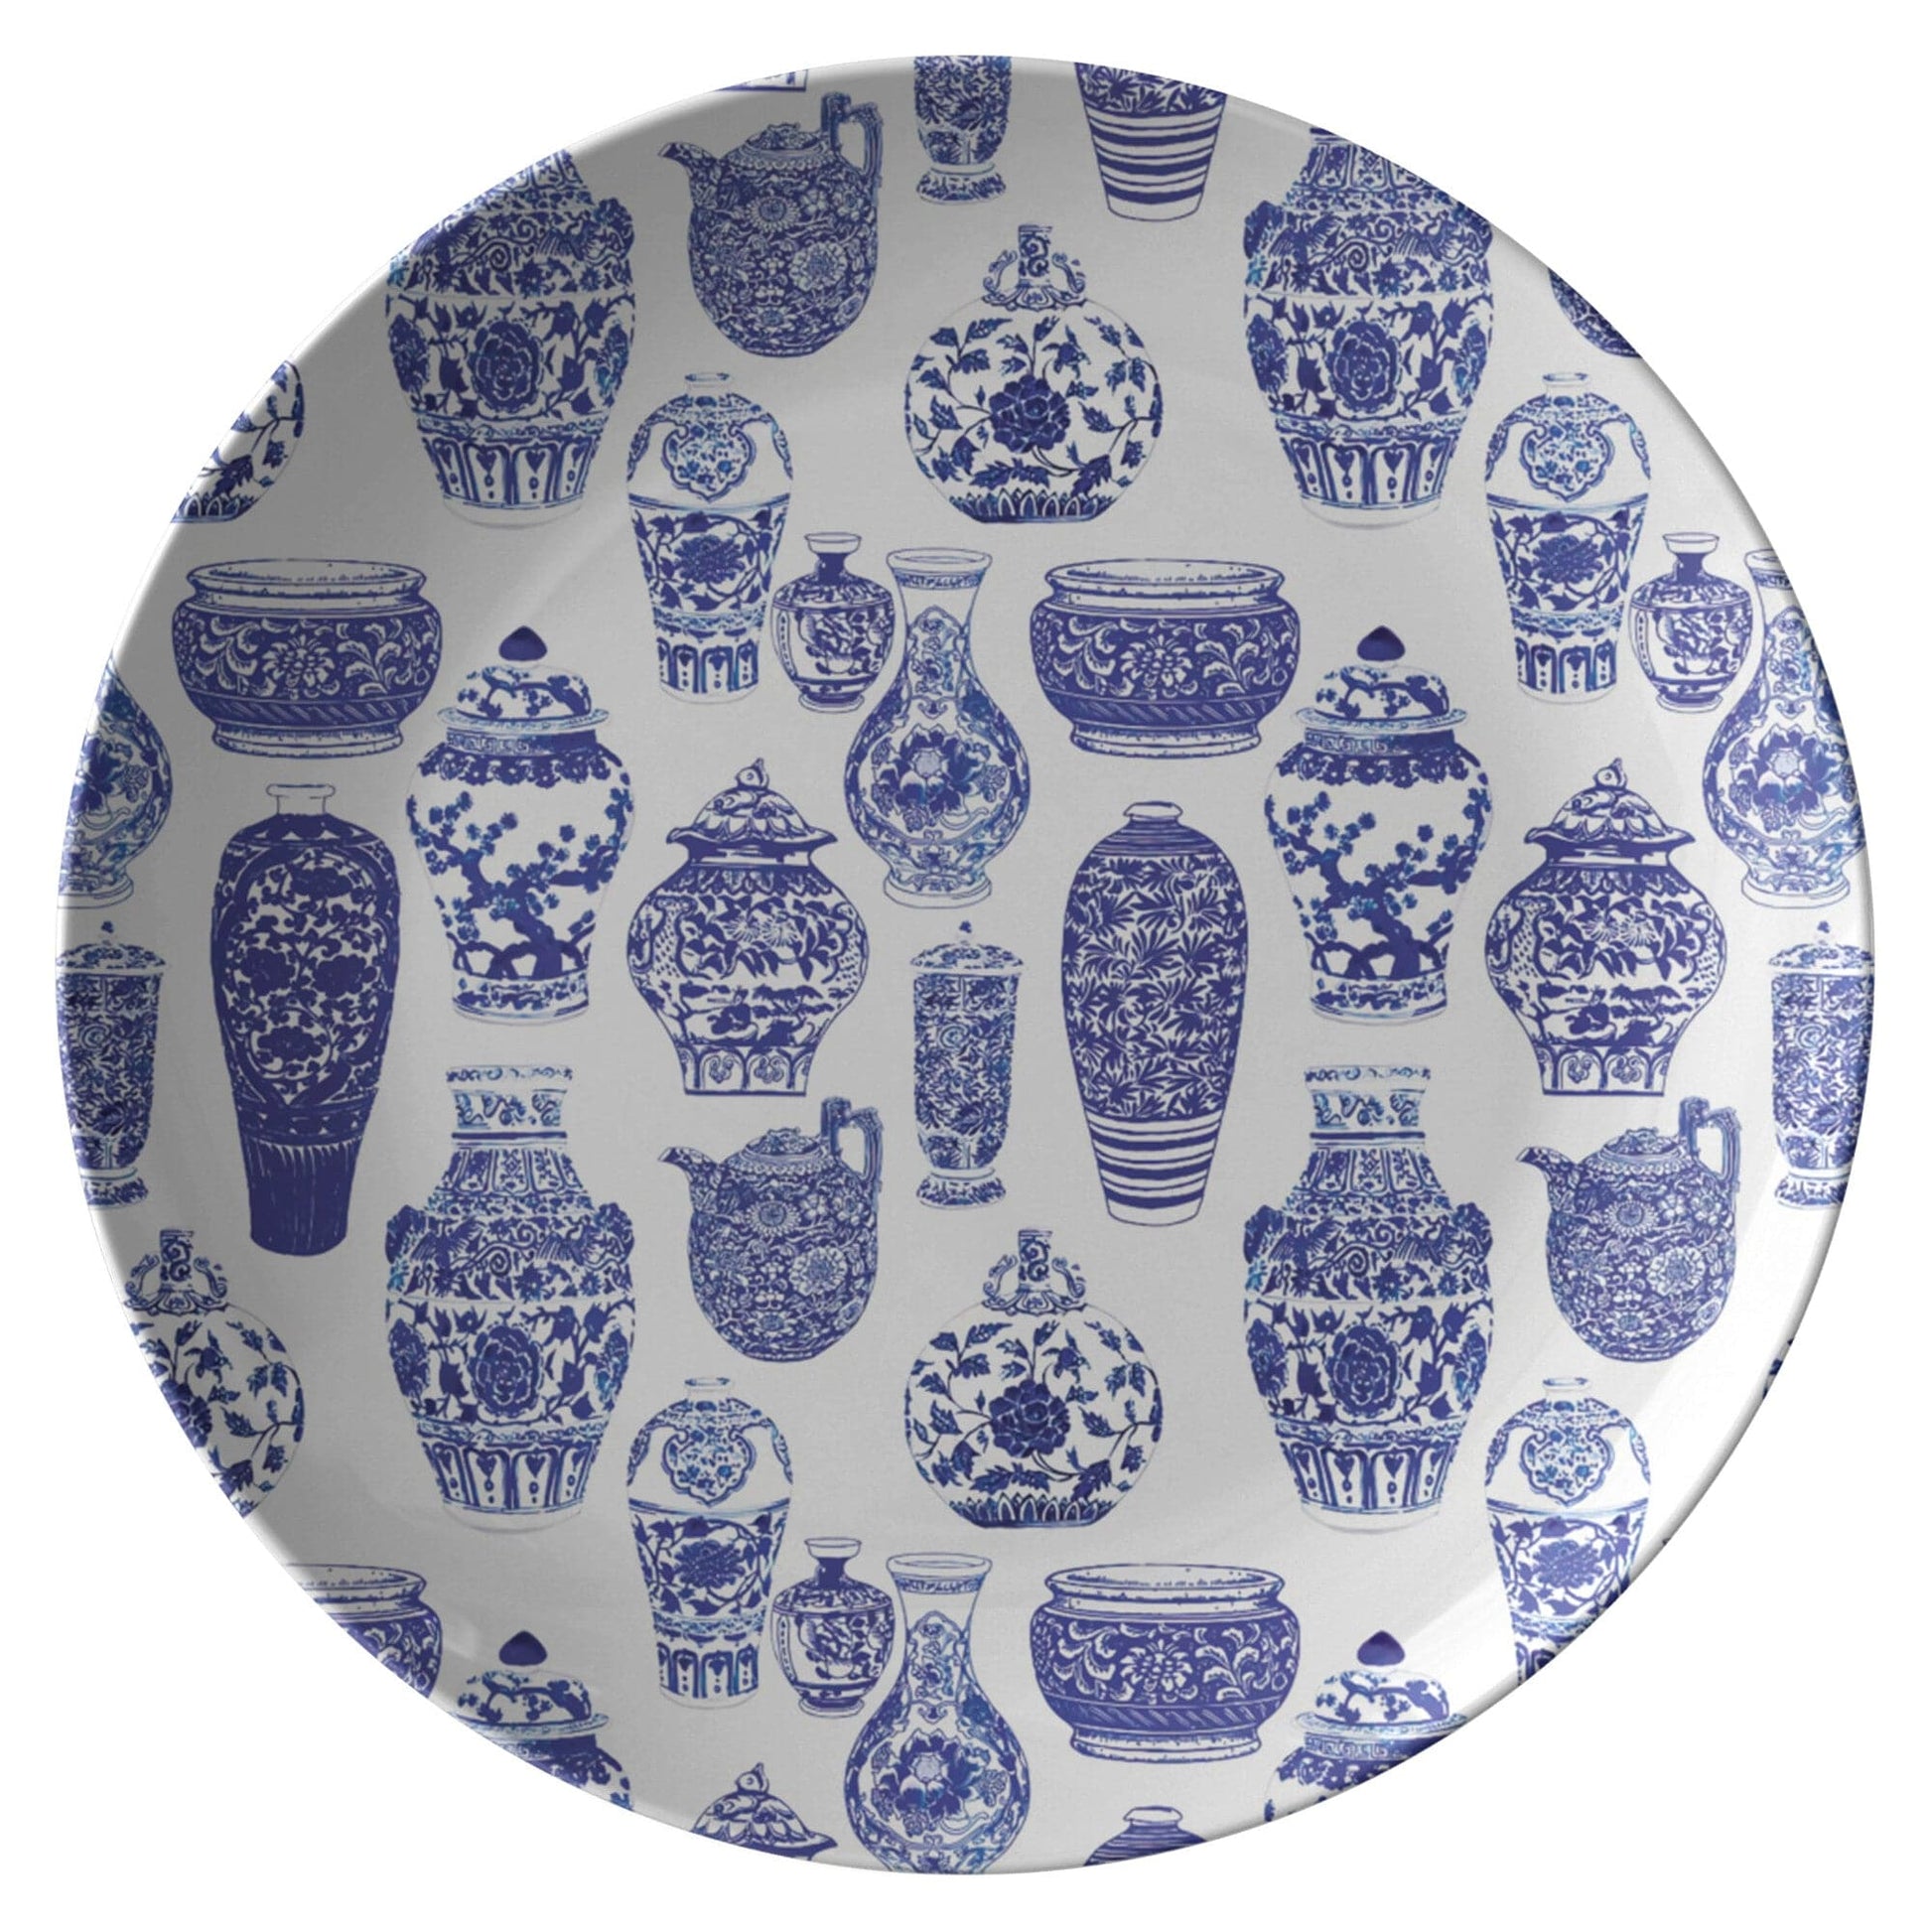 Kate McEnroe New York Chinoiserie Vases Dinner Plate Plates